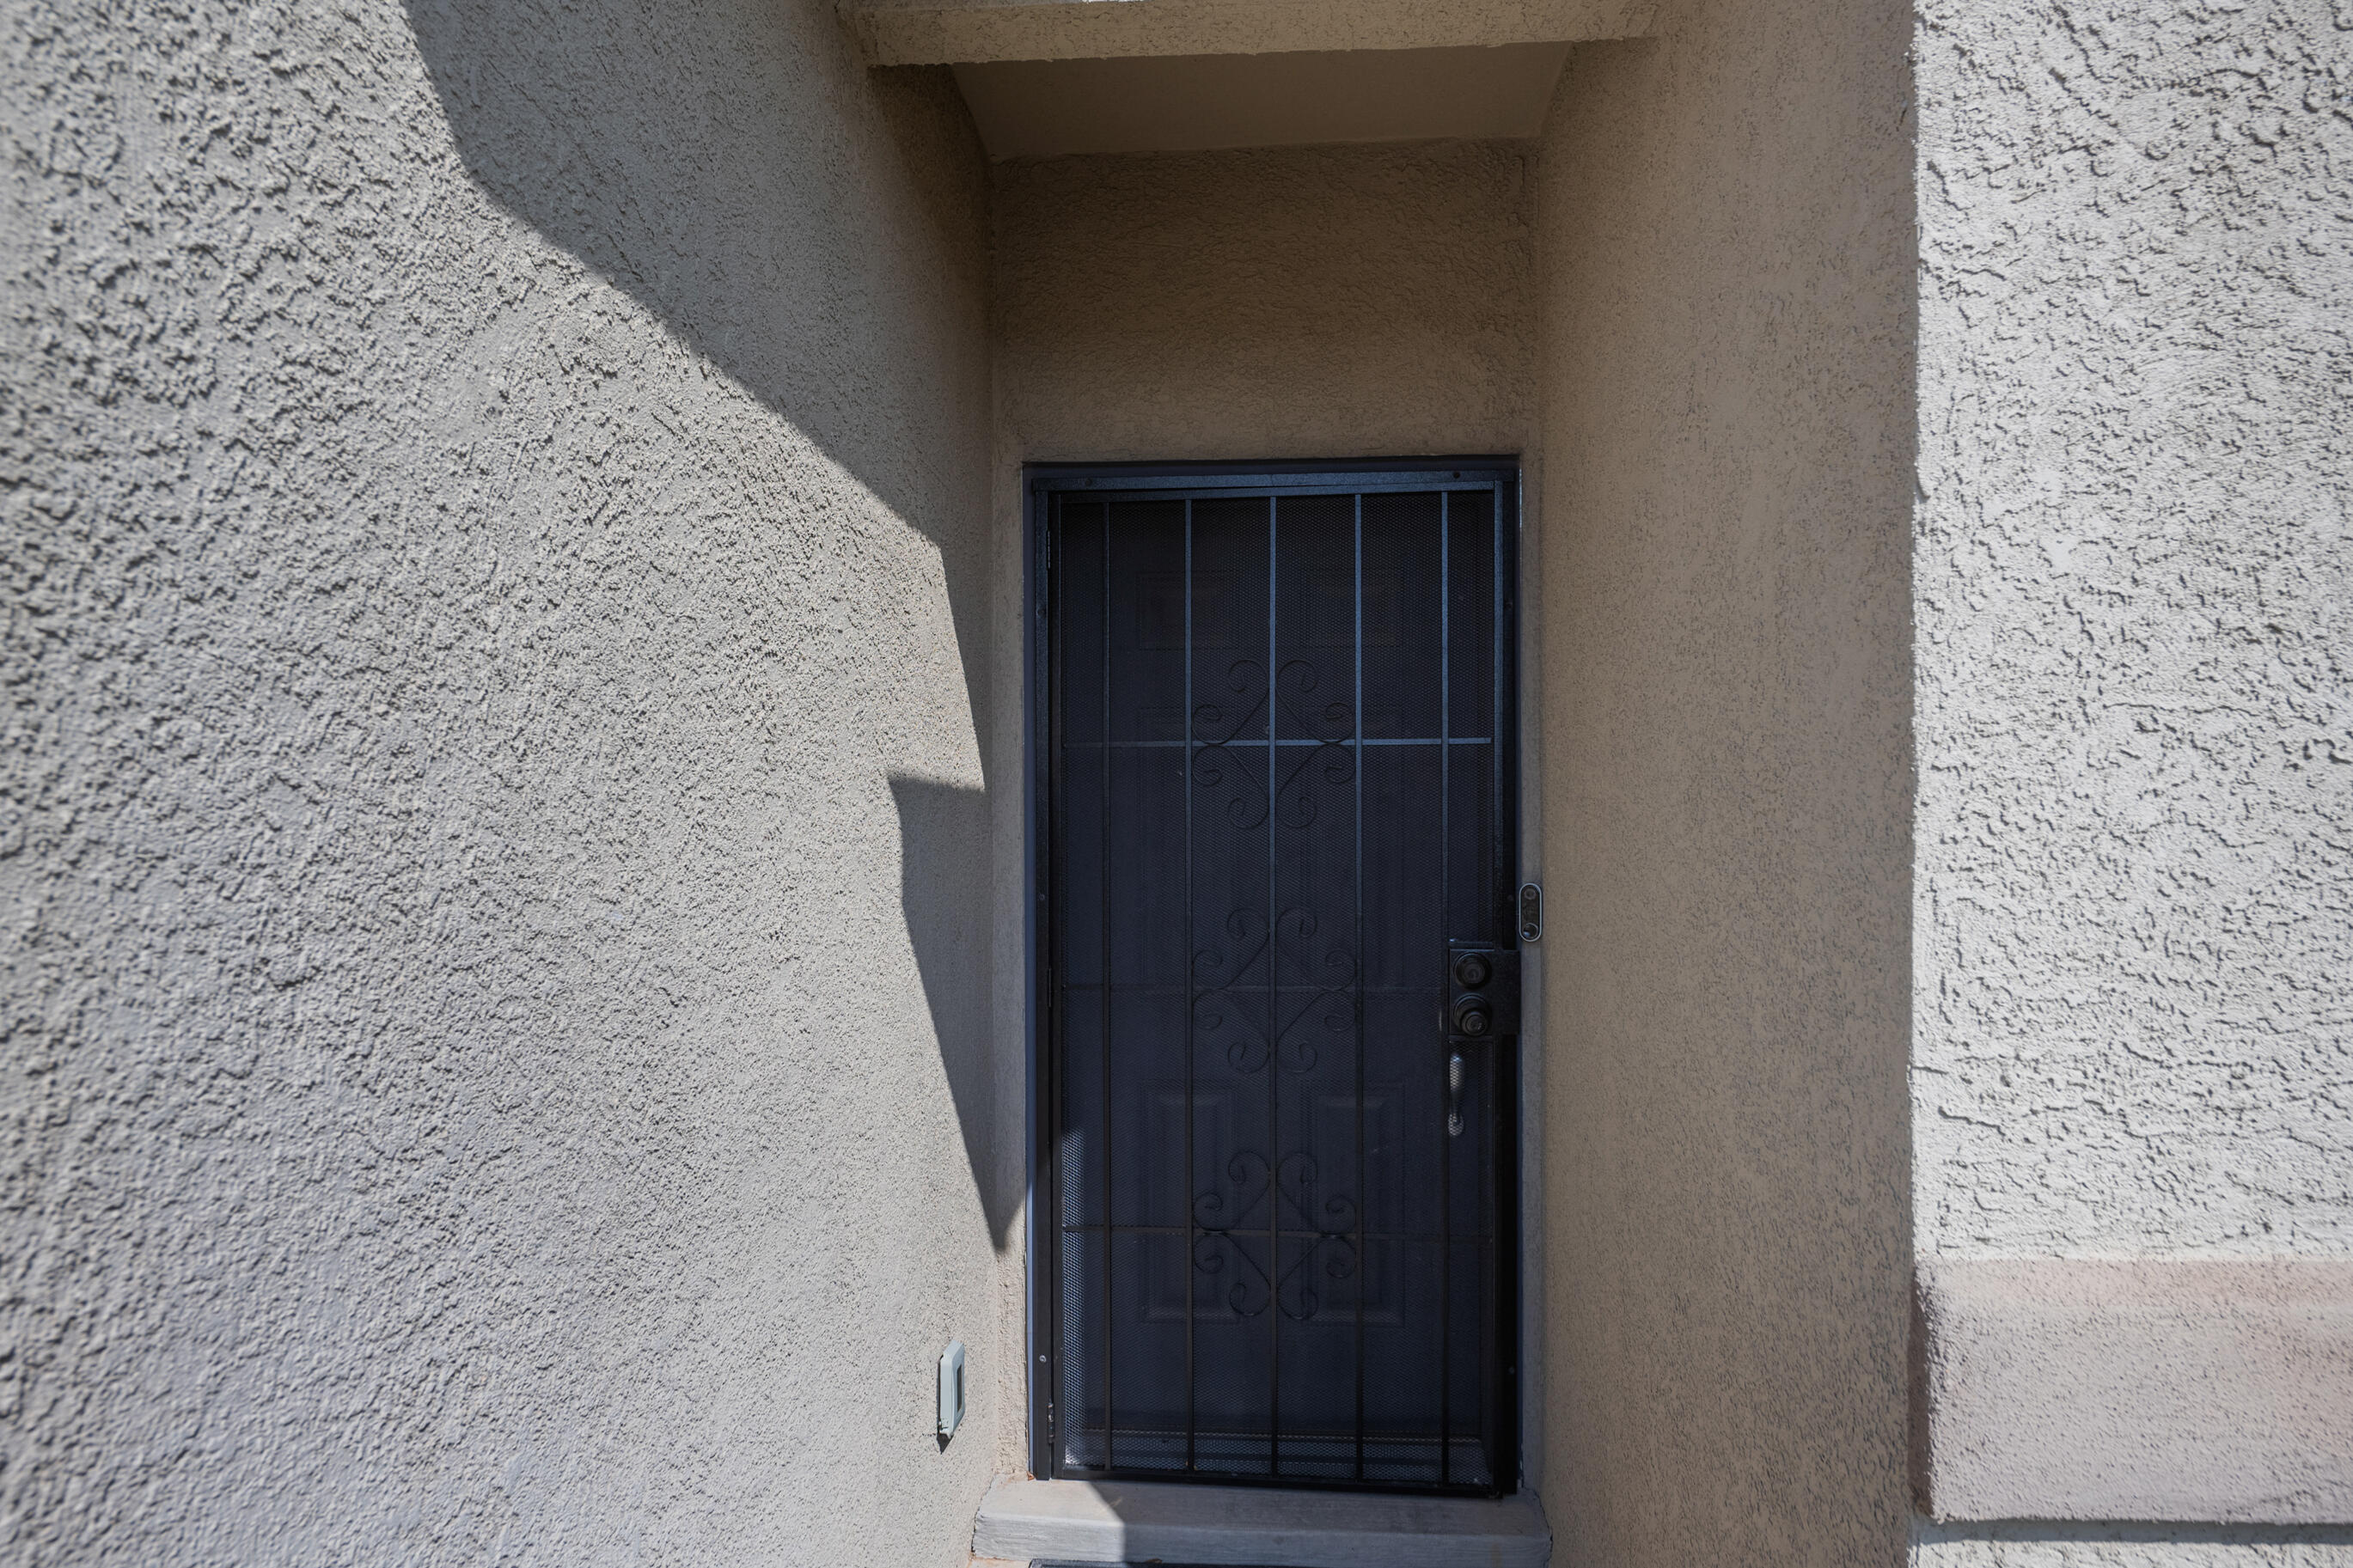 1000 El Paseo Street NW, Rio Rancho, New Mexico 87144, 3 Bedrooms Bedrooms, ,2 BathroomsBathrooms,Residential,For Sale,1000 El Paseo Street NW,1041286